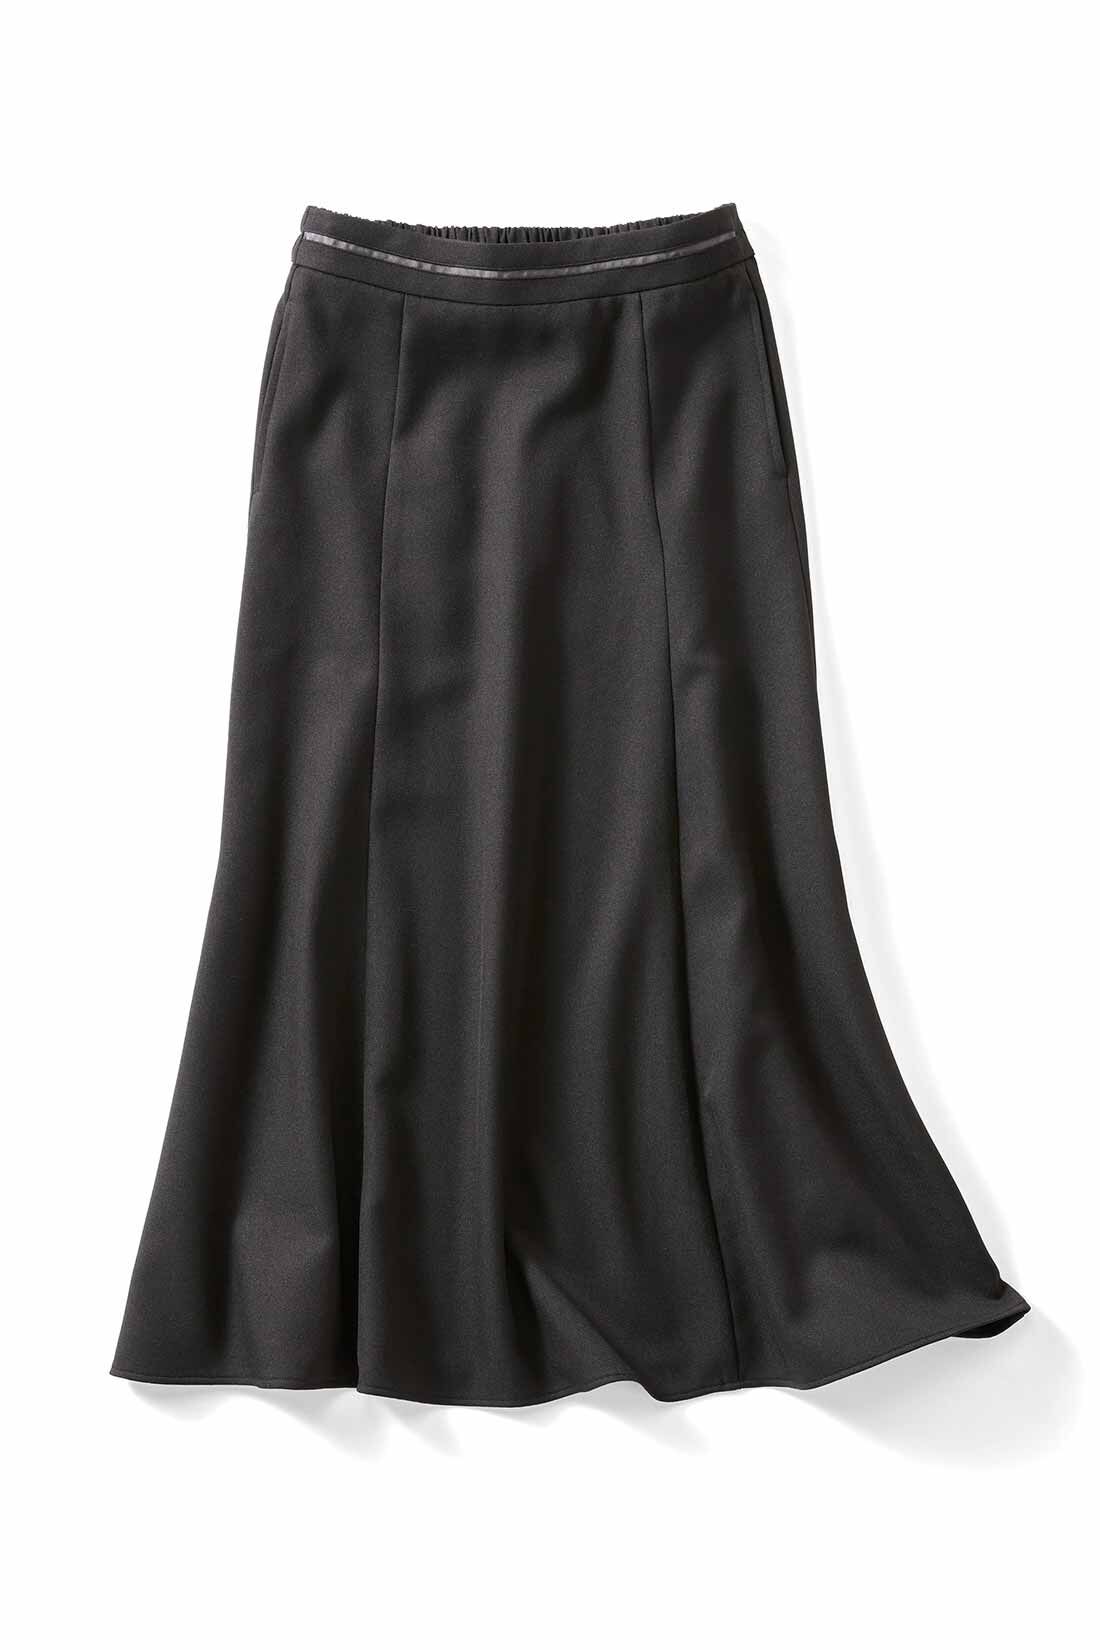 IEDIT|IEDIT[イディット]　シルエットが美しい UVカット機能のすっきり見えスカート|〈ブラック〉